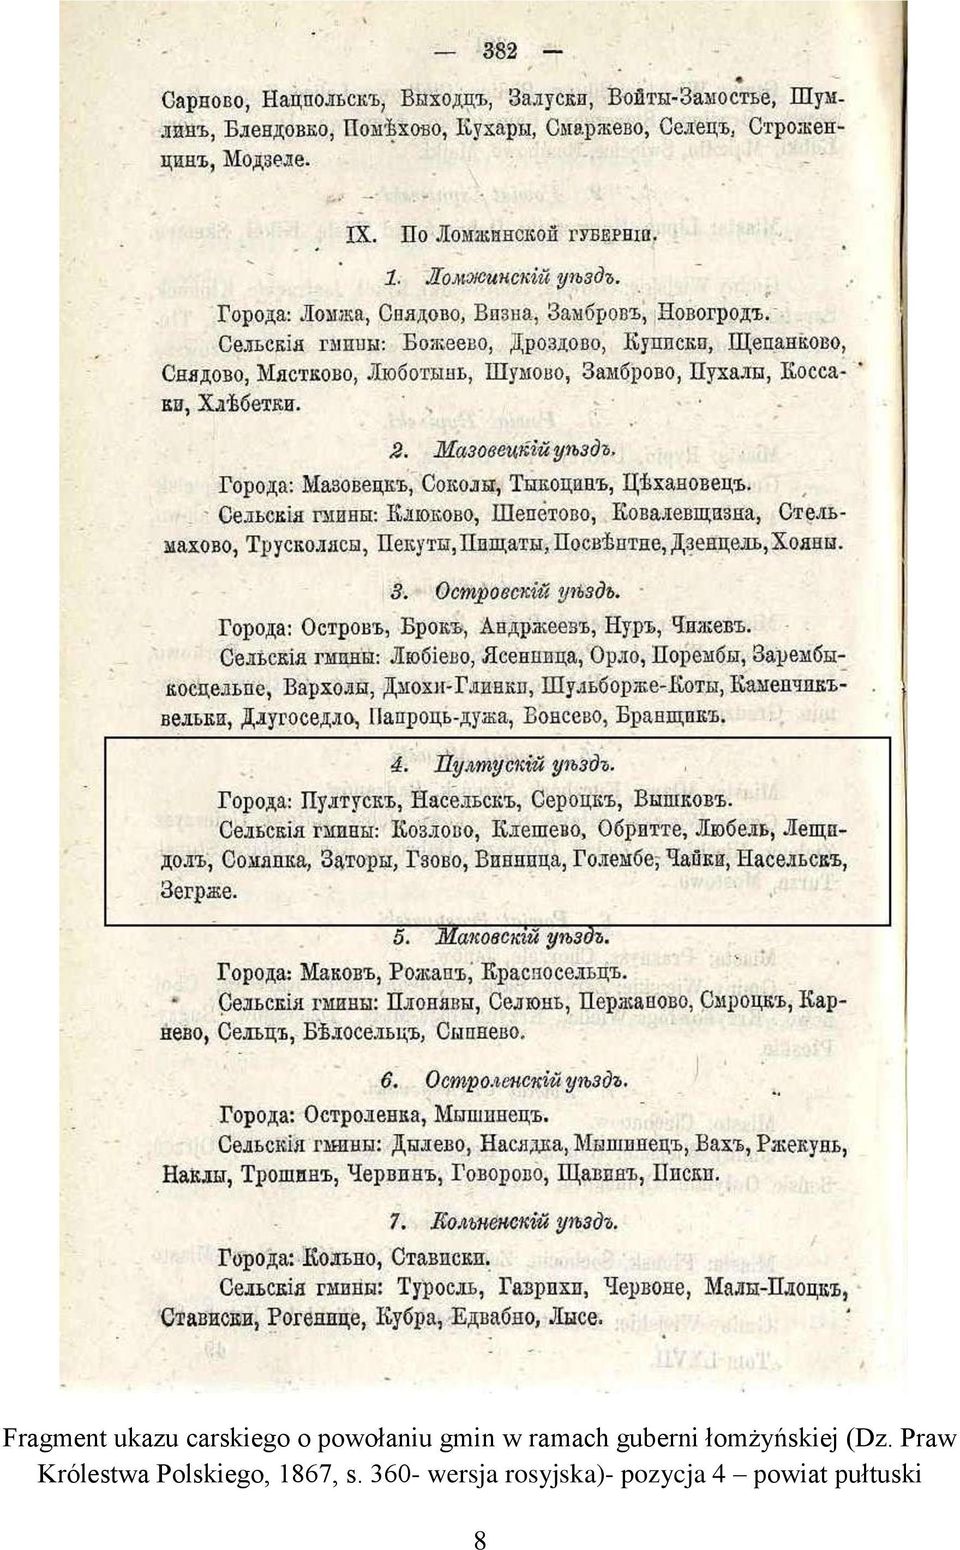 Praw Królestwa Polskiego, 1867, s.